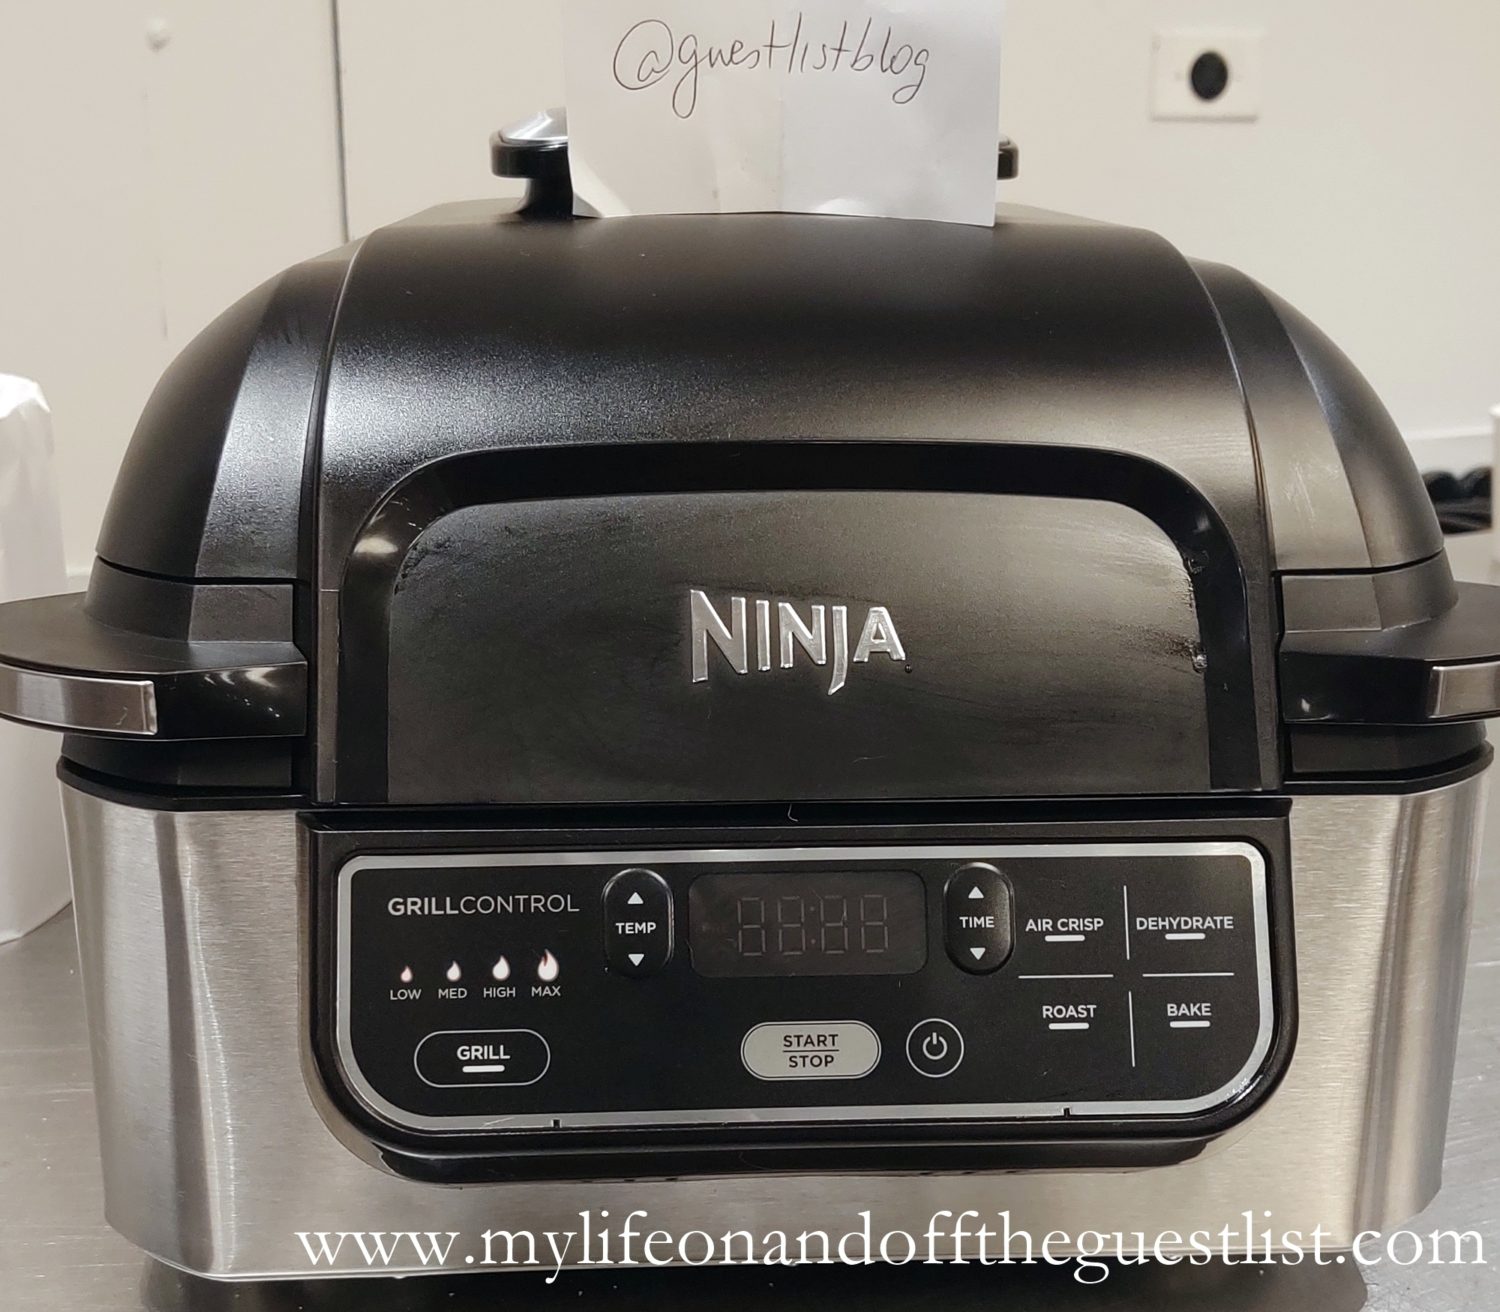 Ninja Foodi 5 In 1 Indoor Grill With 4 Quart Air Fryer Www.mylifeonandofftheguestlist.com  1500x1312 